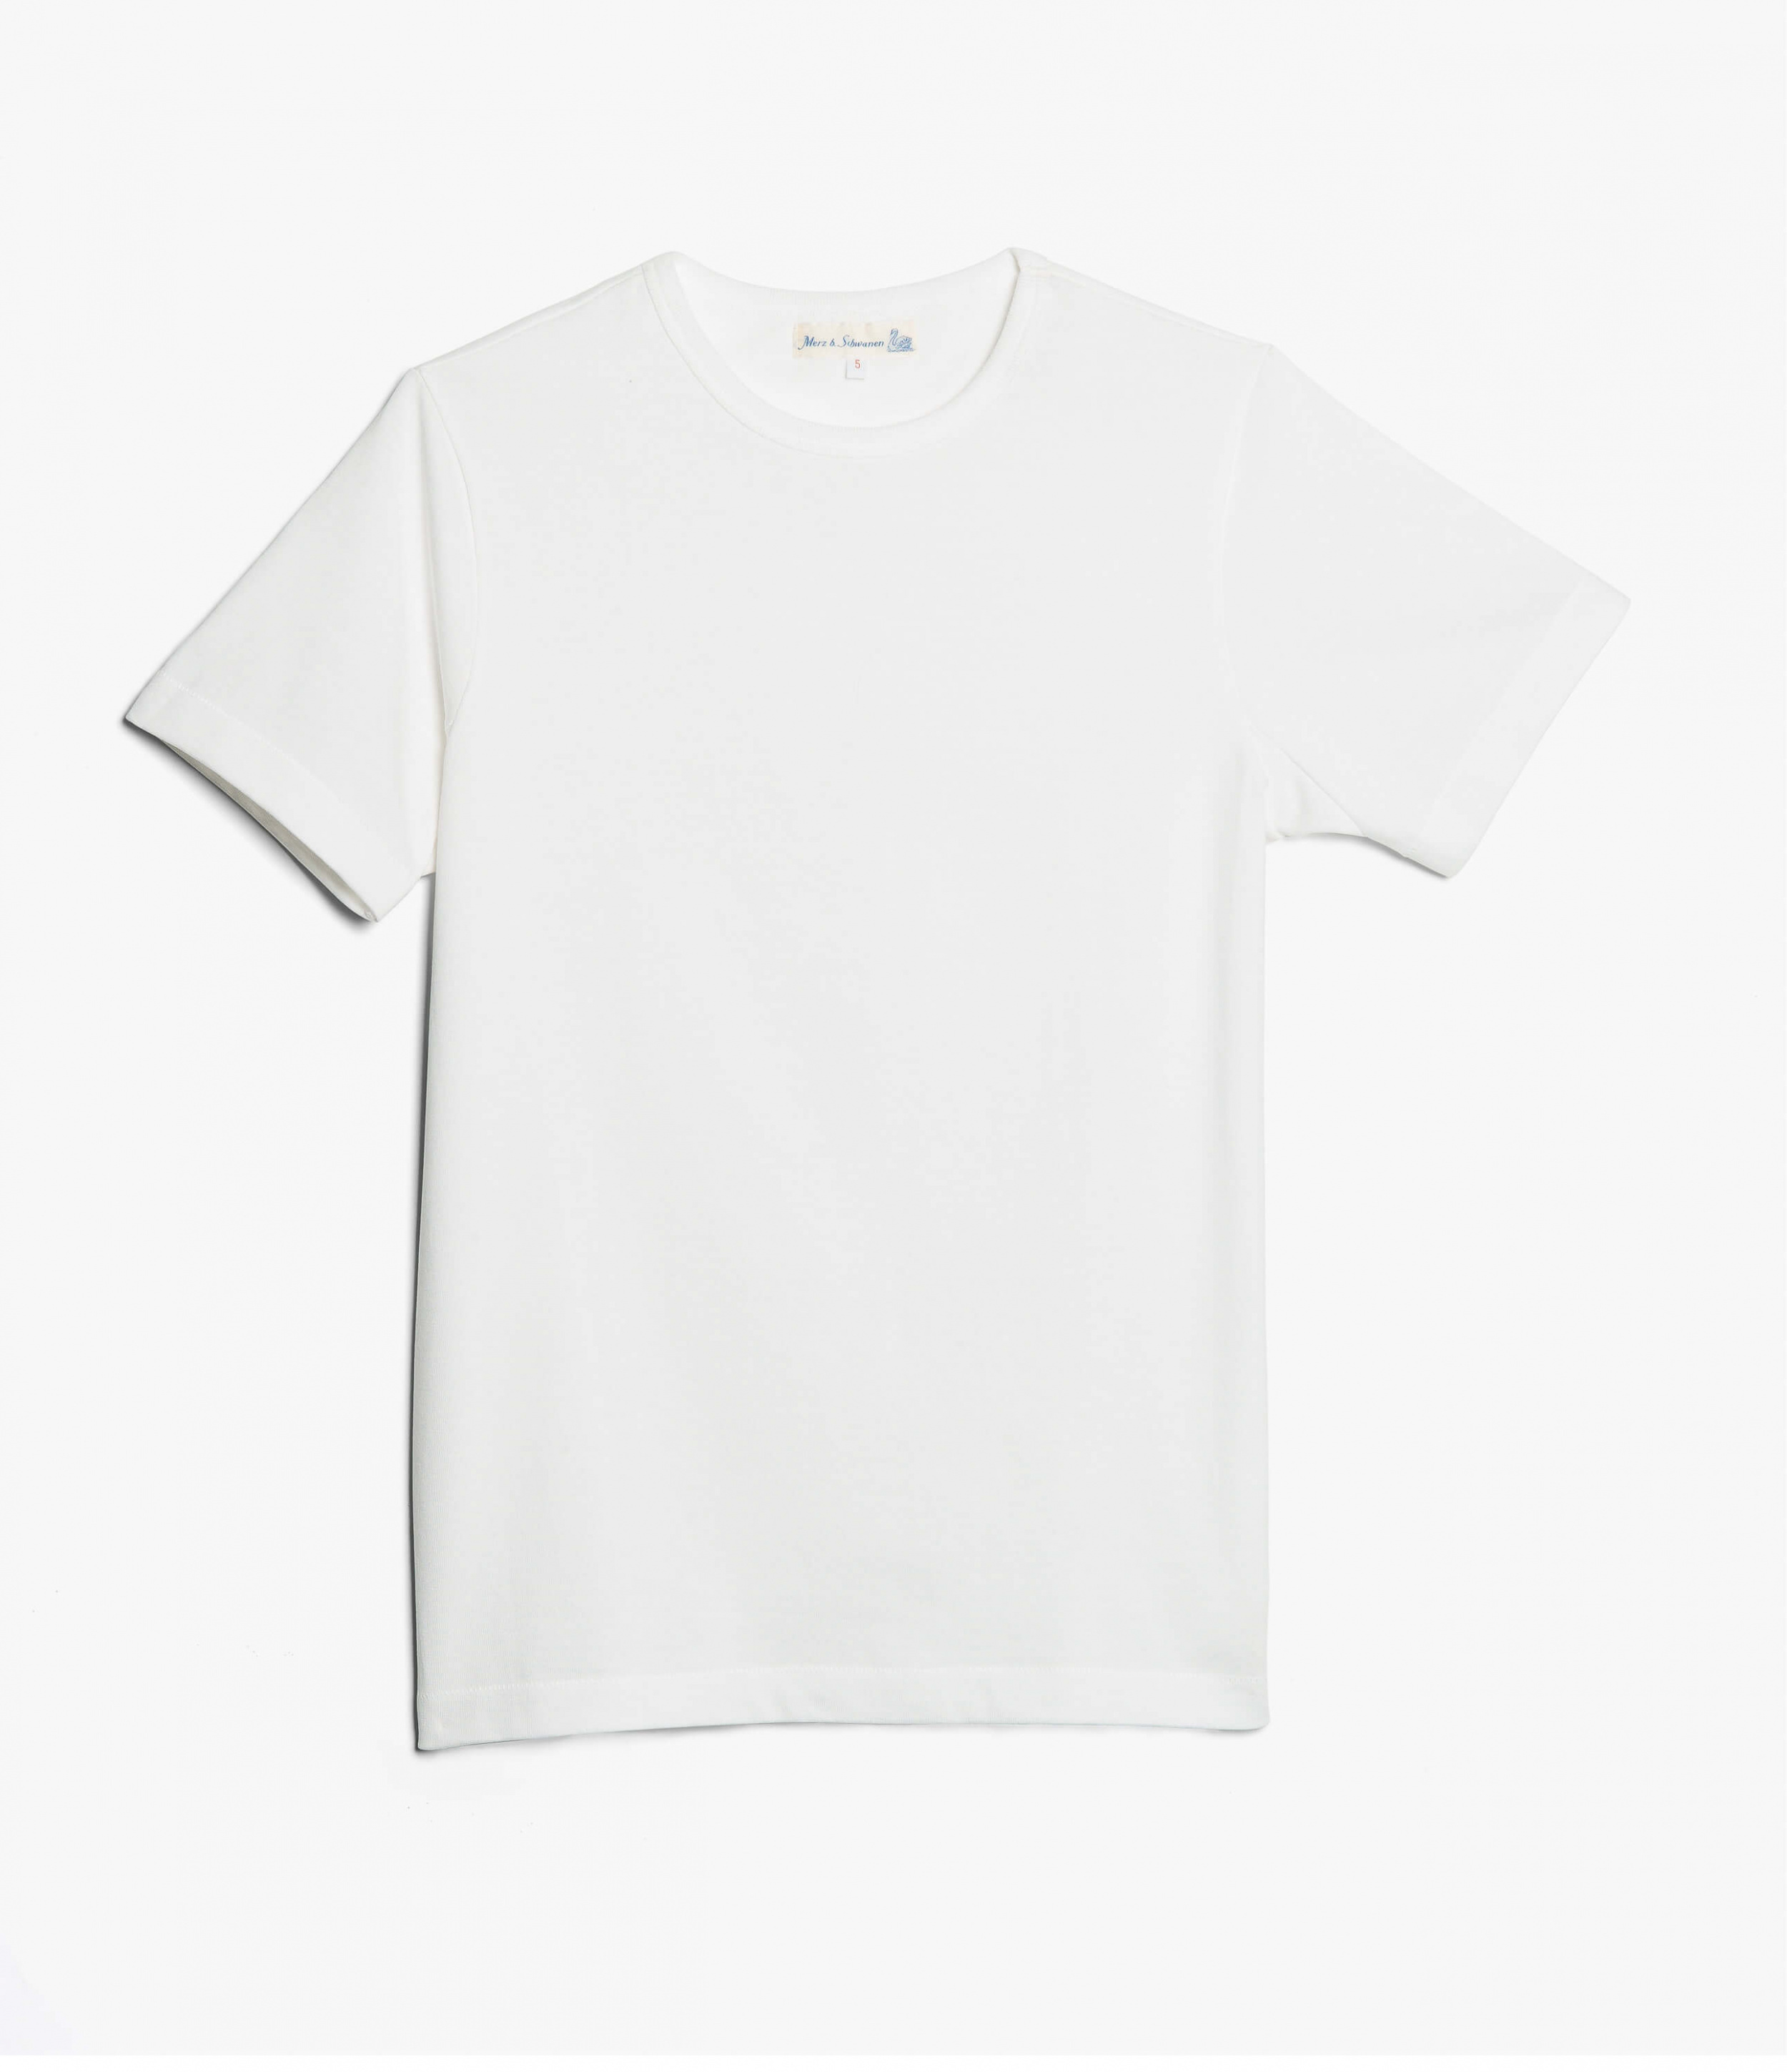 Merz b. Schwanen 215 White T-Shirt